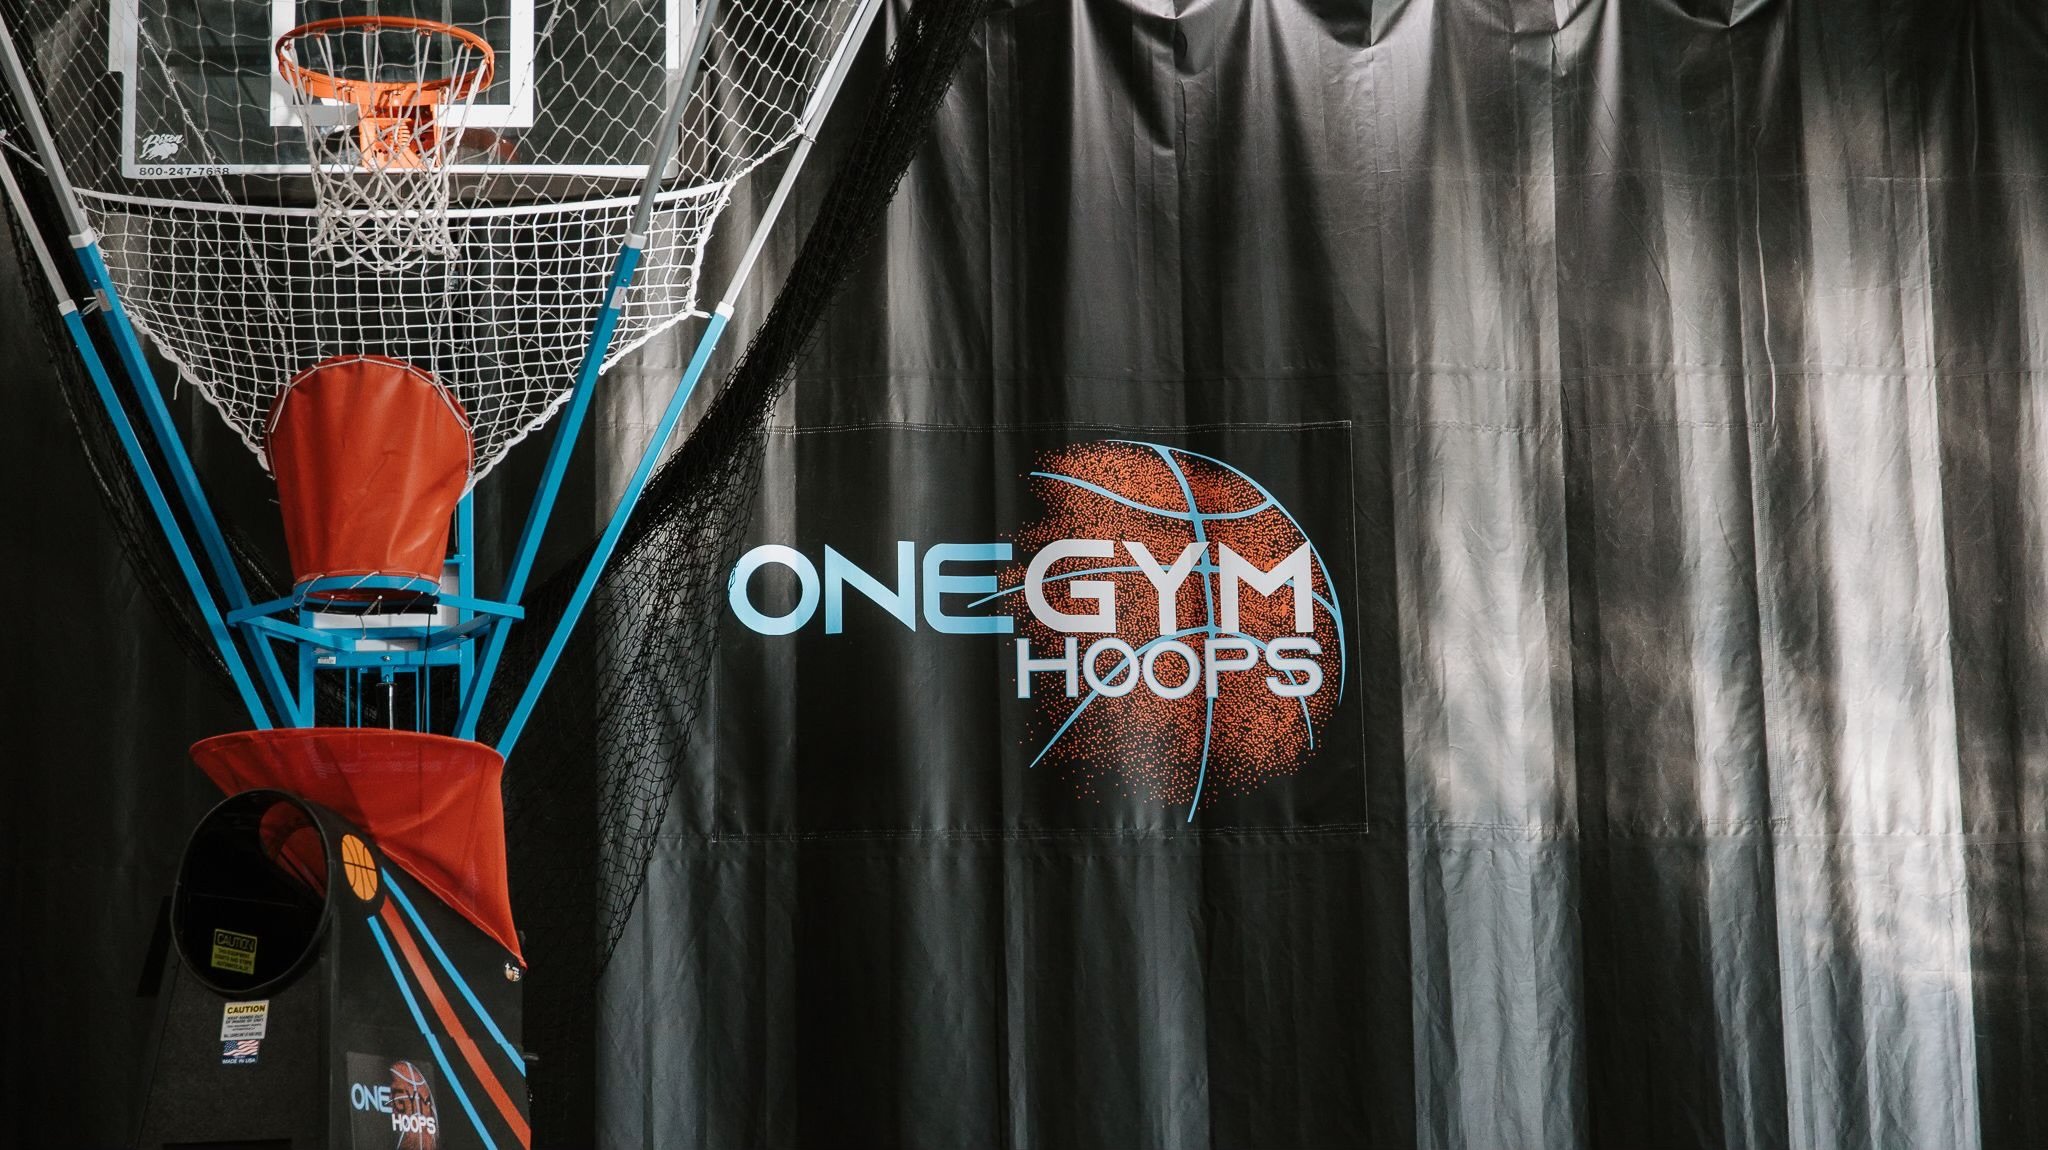 Omaha Sports Academy Basketball Facility